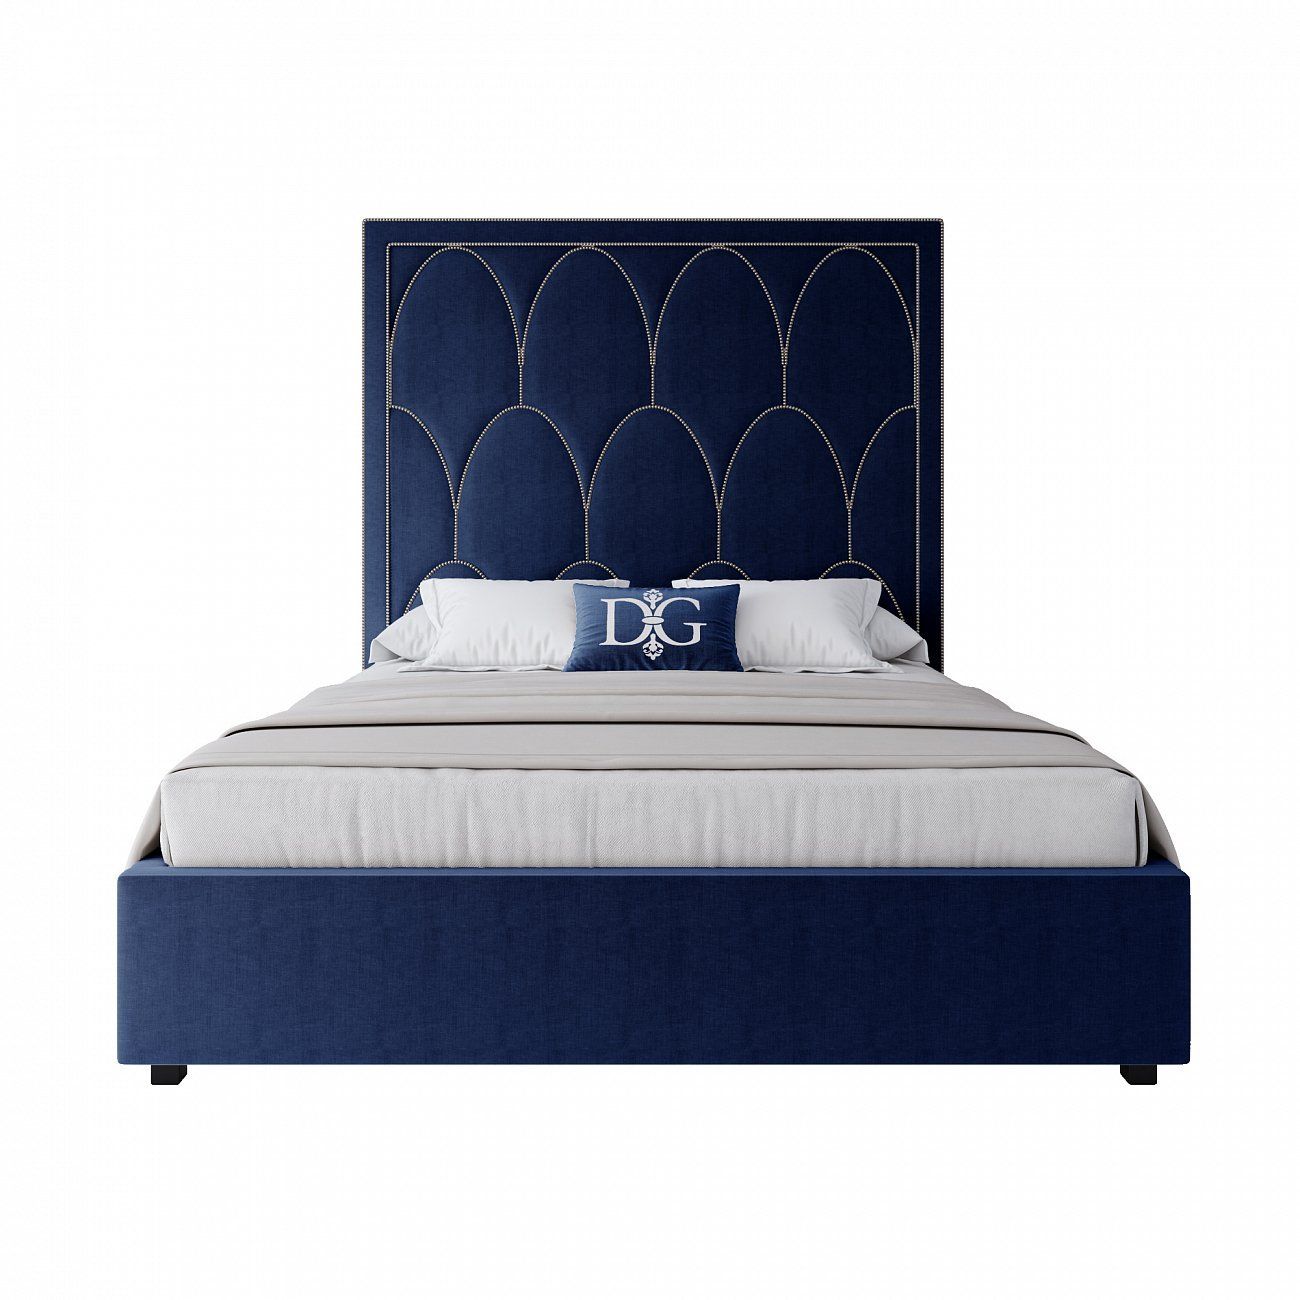 Petals Queen double bed 160x200 cm blue